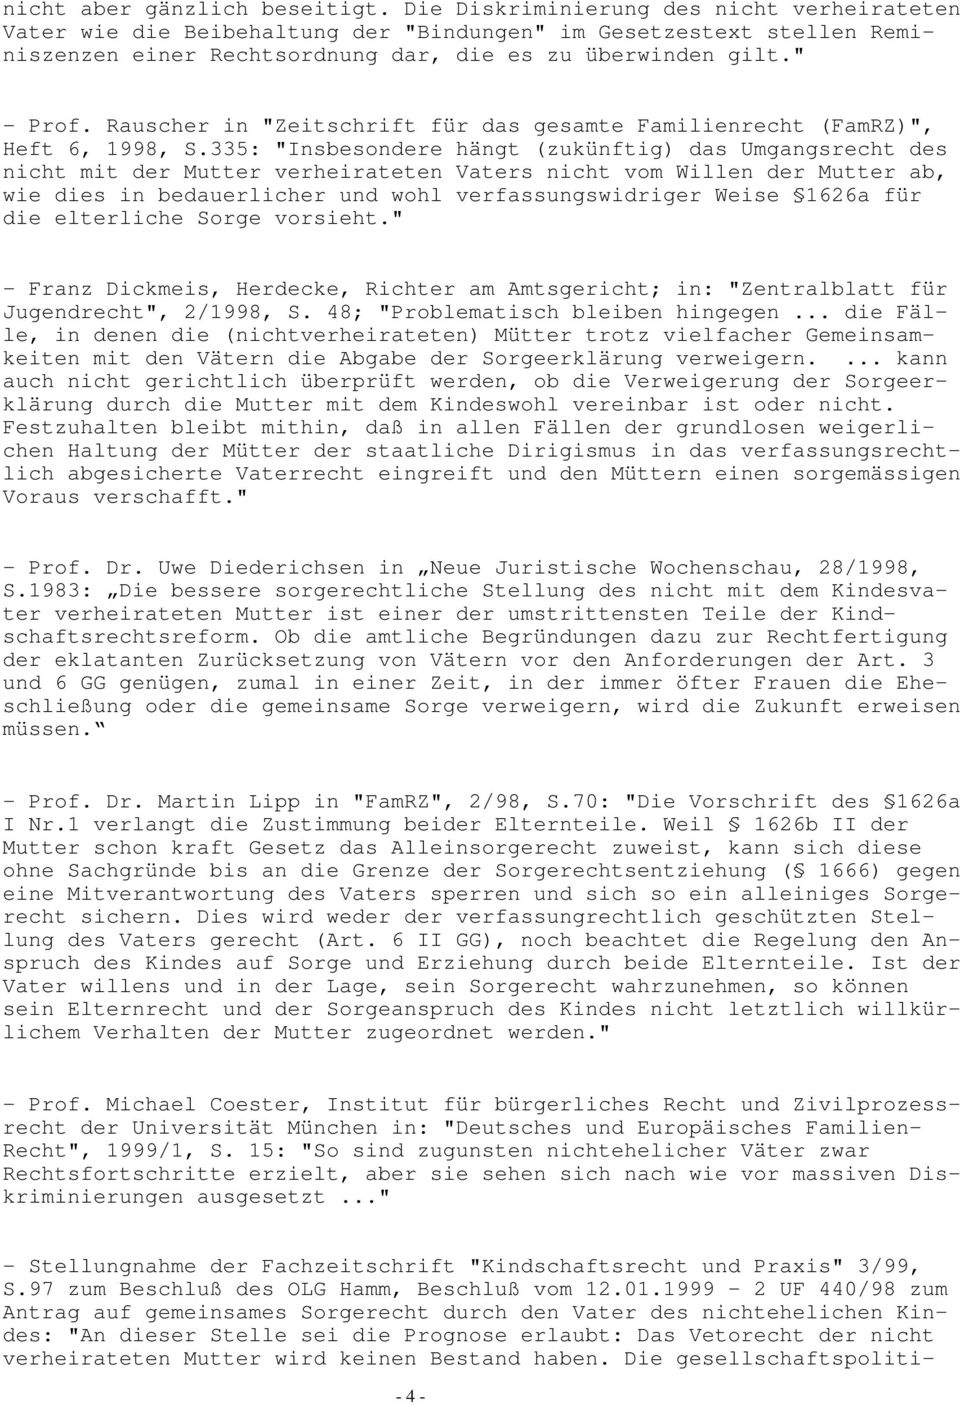 Rauscher in "Zeitschrift für das gesamte Familienrecht (FamRZ)", Heft 6, 1998, S.